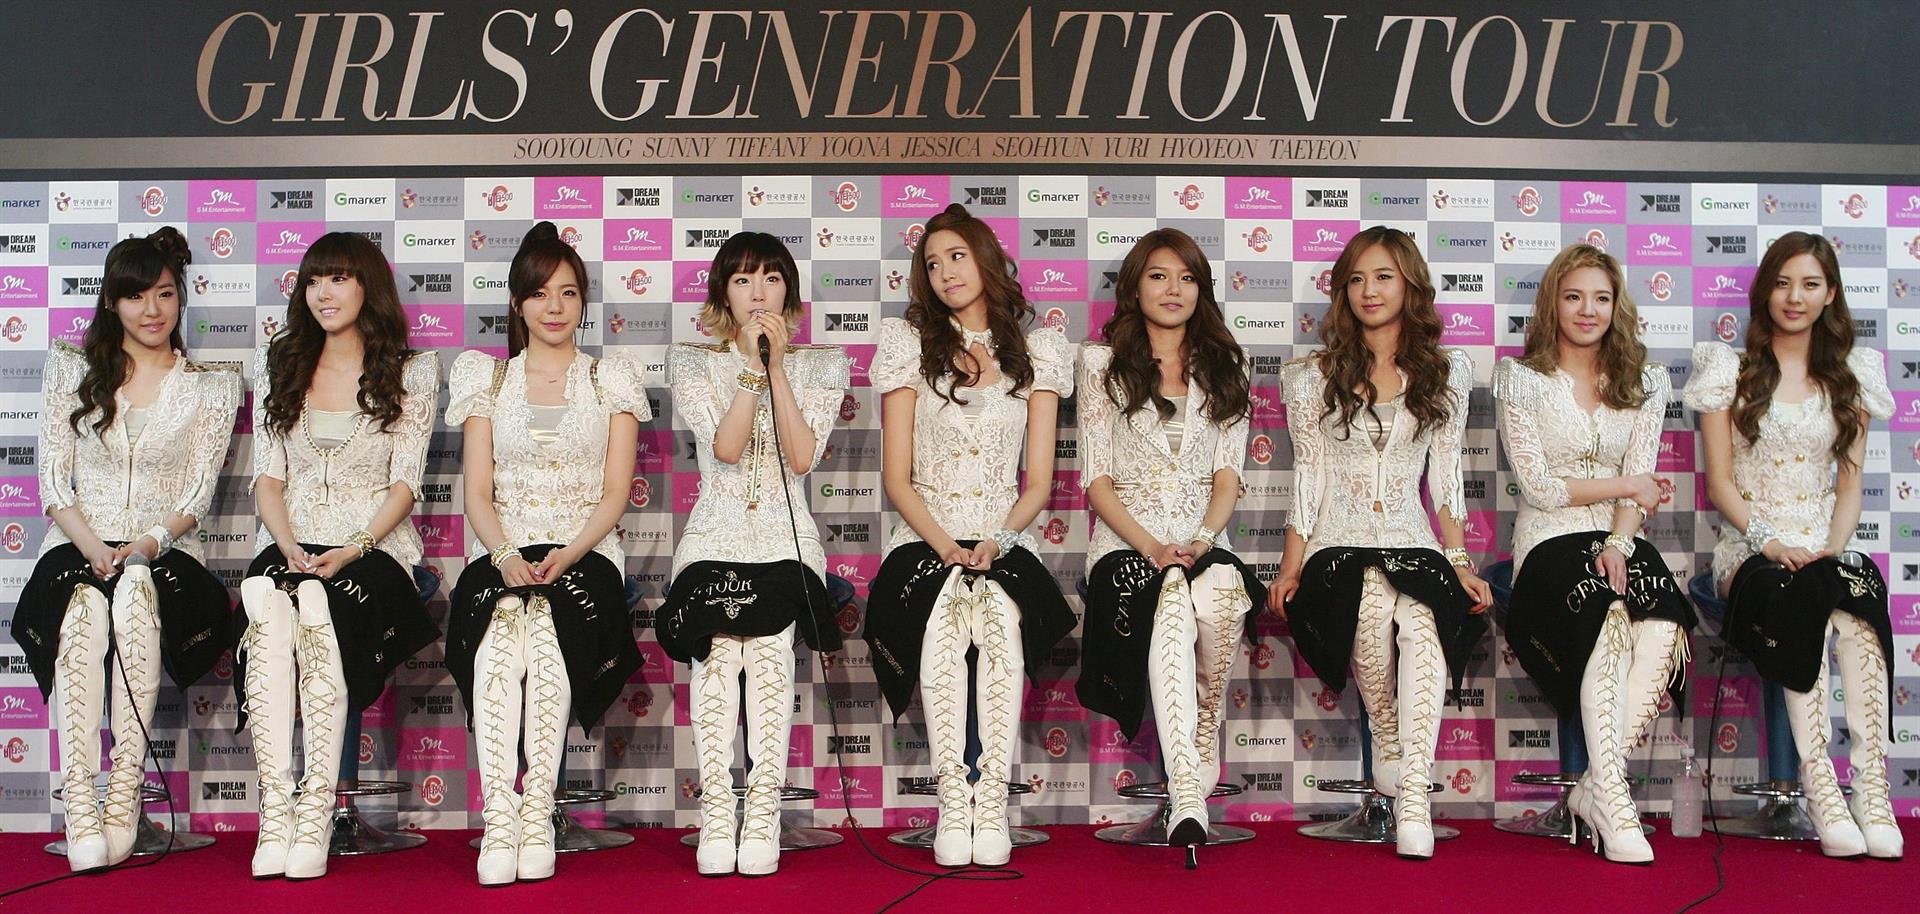 Las Girls Generation lanzarán en agosto su primer disco en 5 años